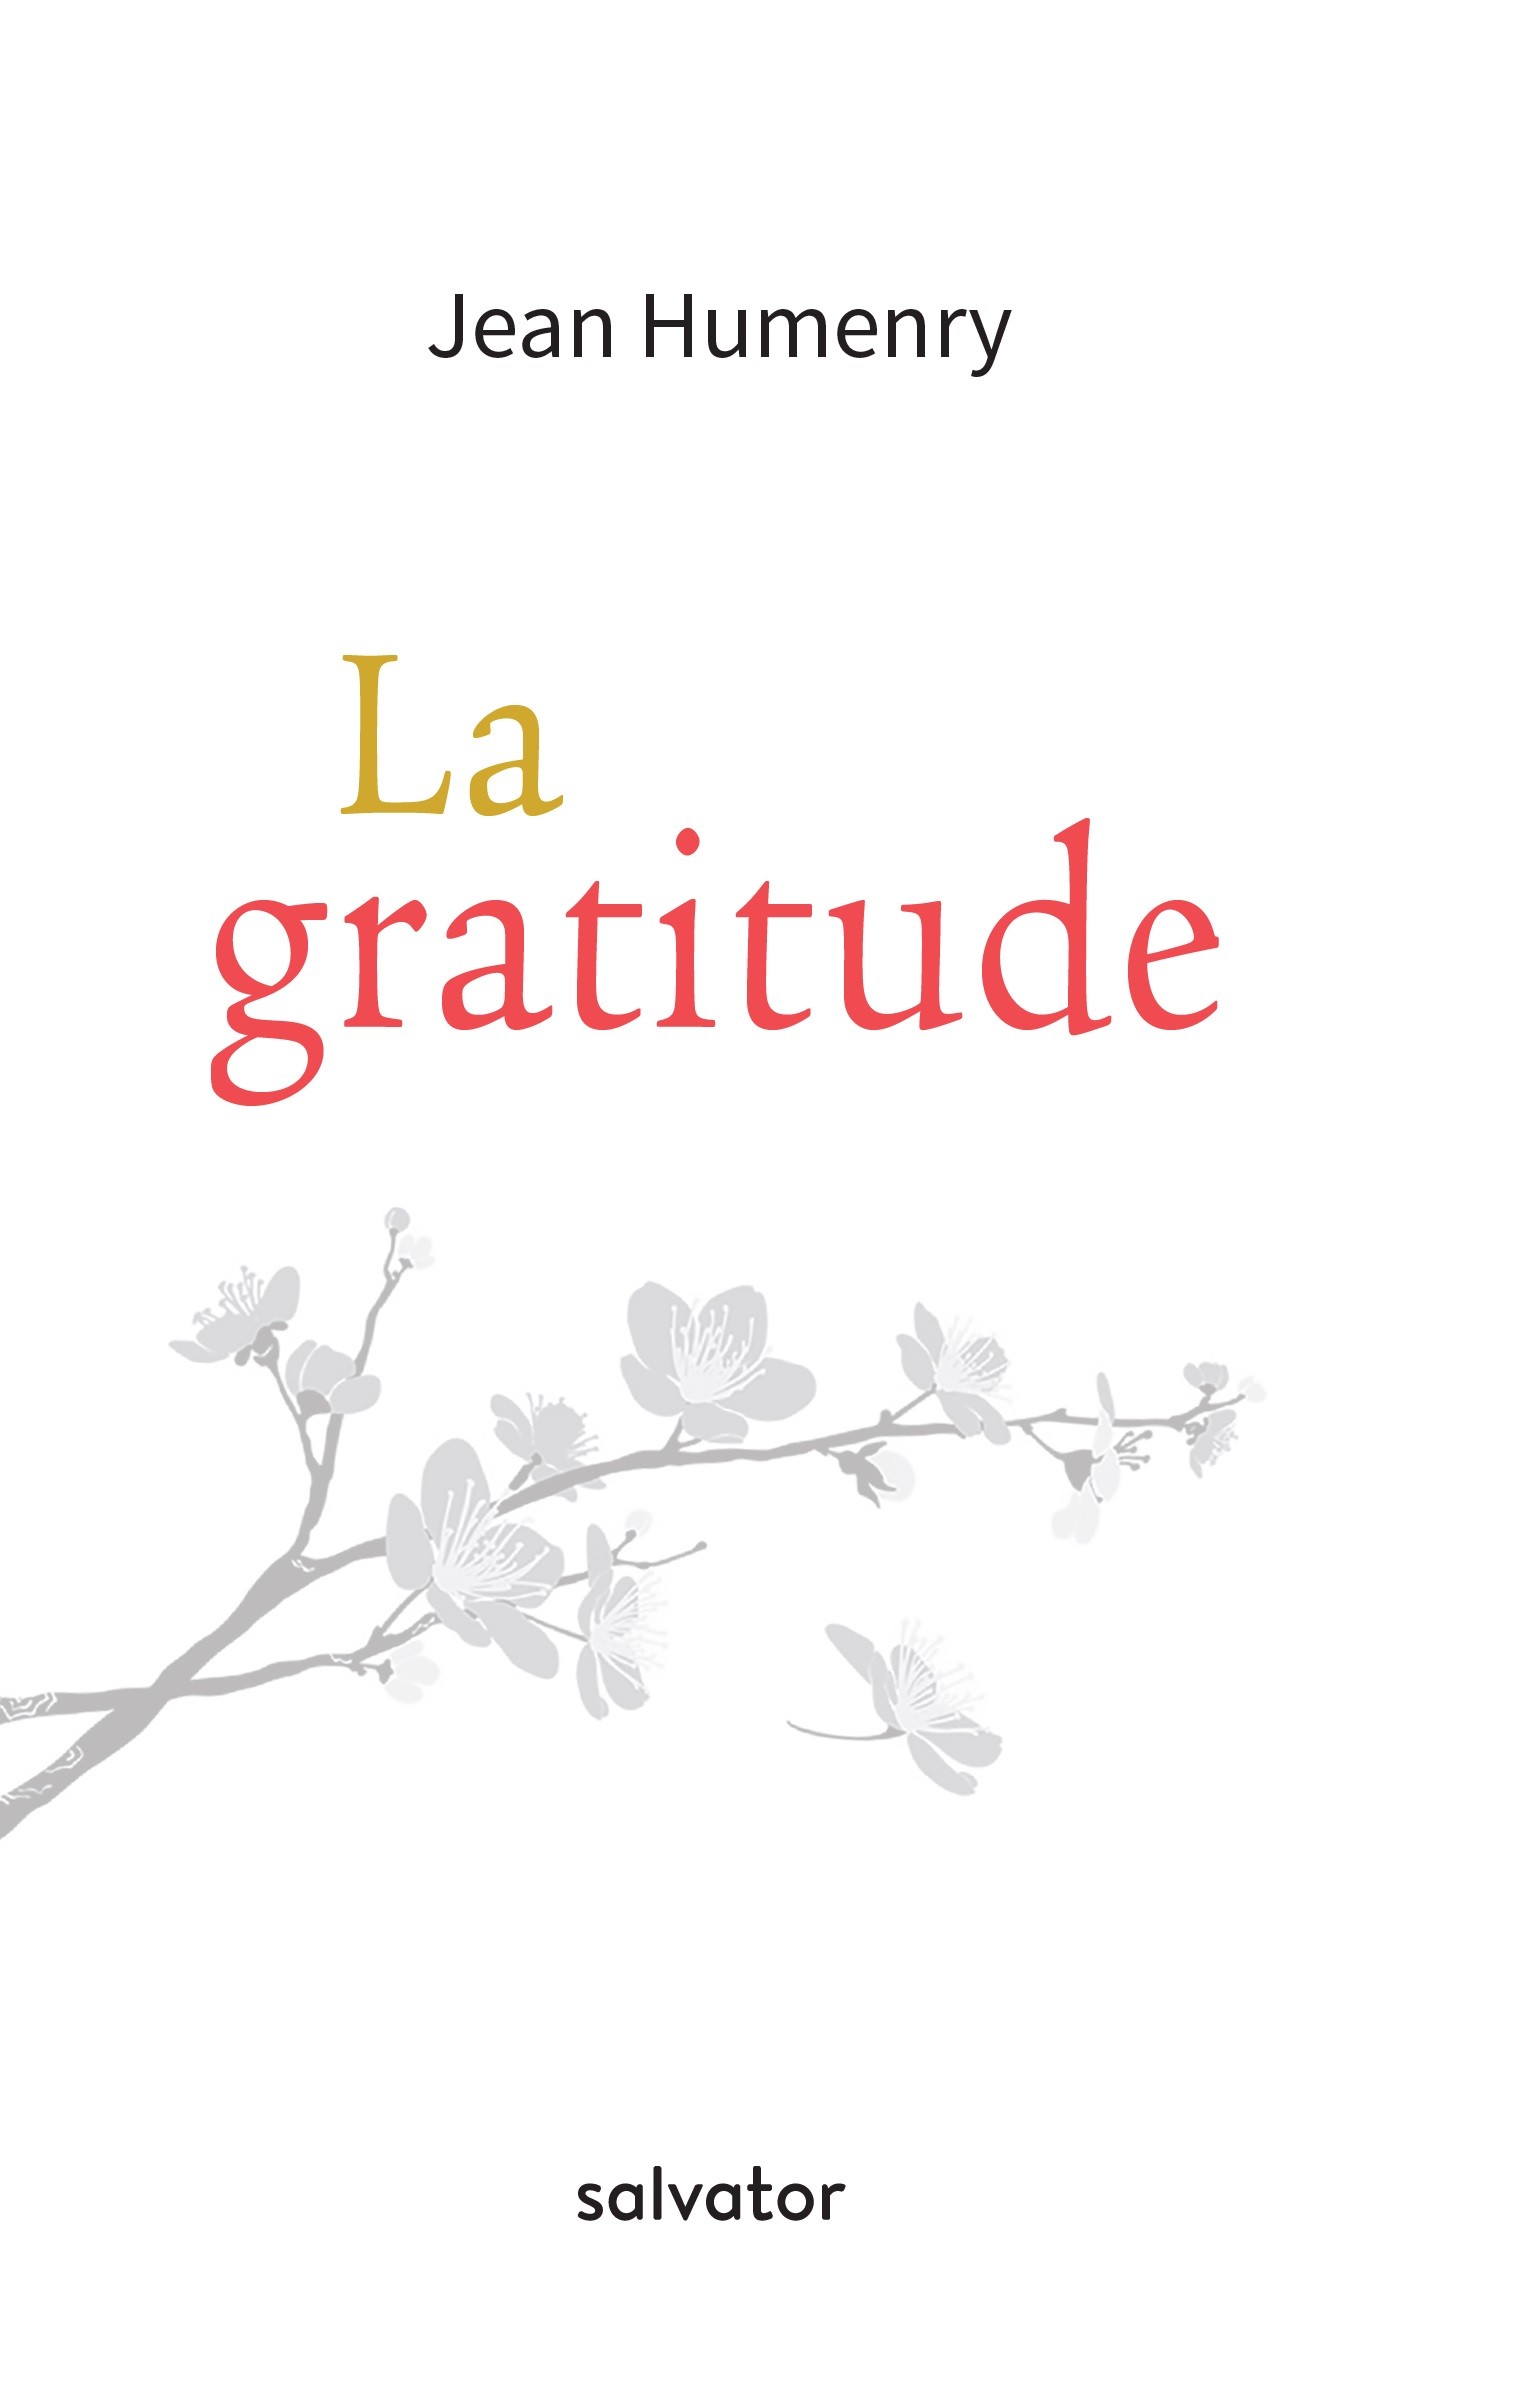 Journal de gratitude gothique - Éternellement reconnaissant